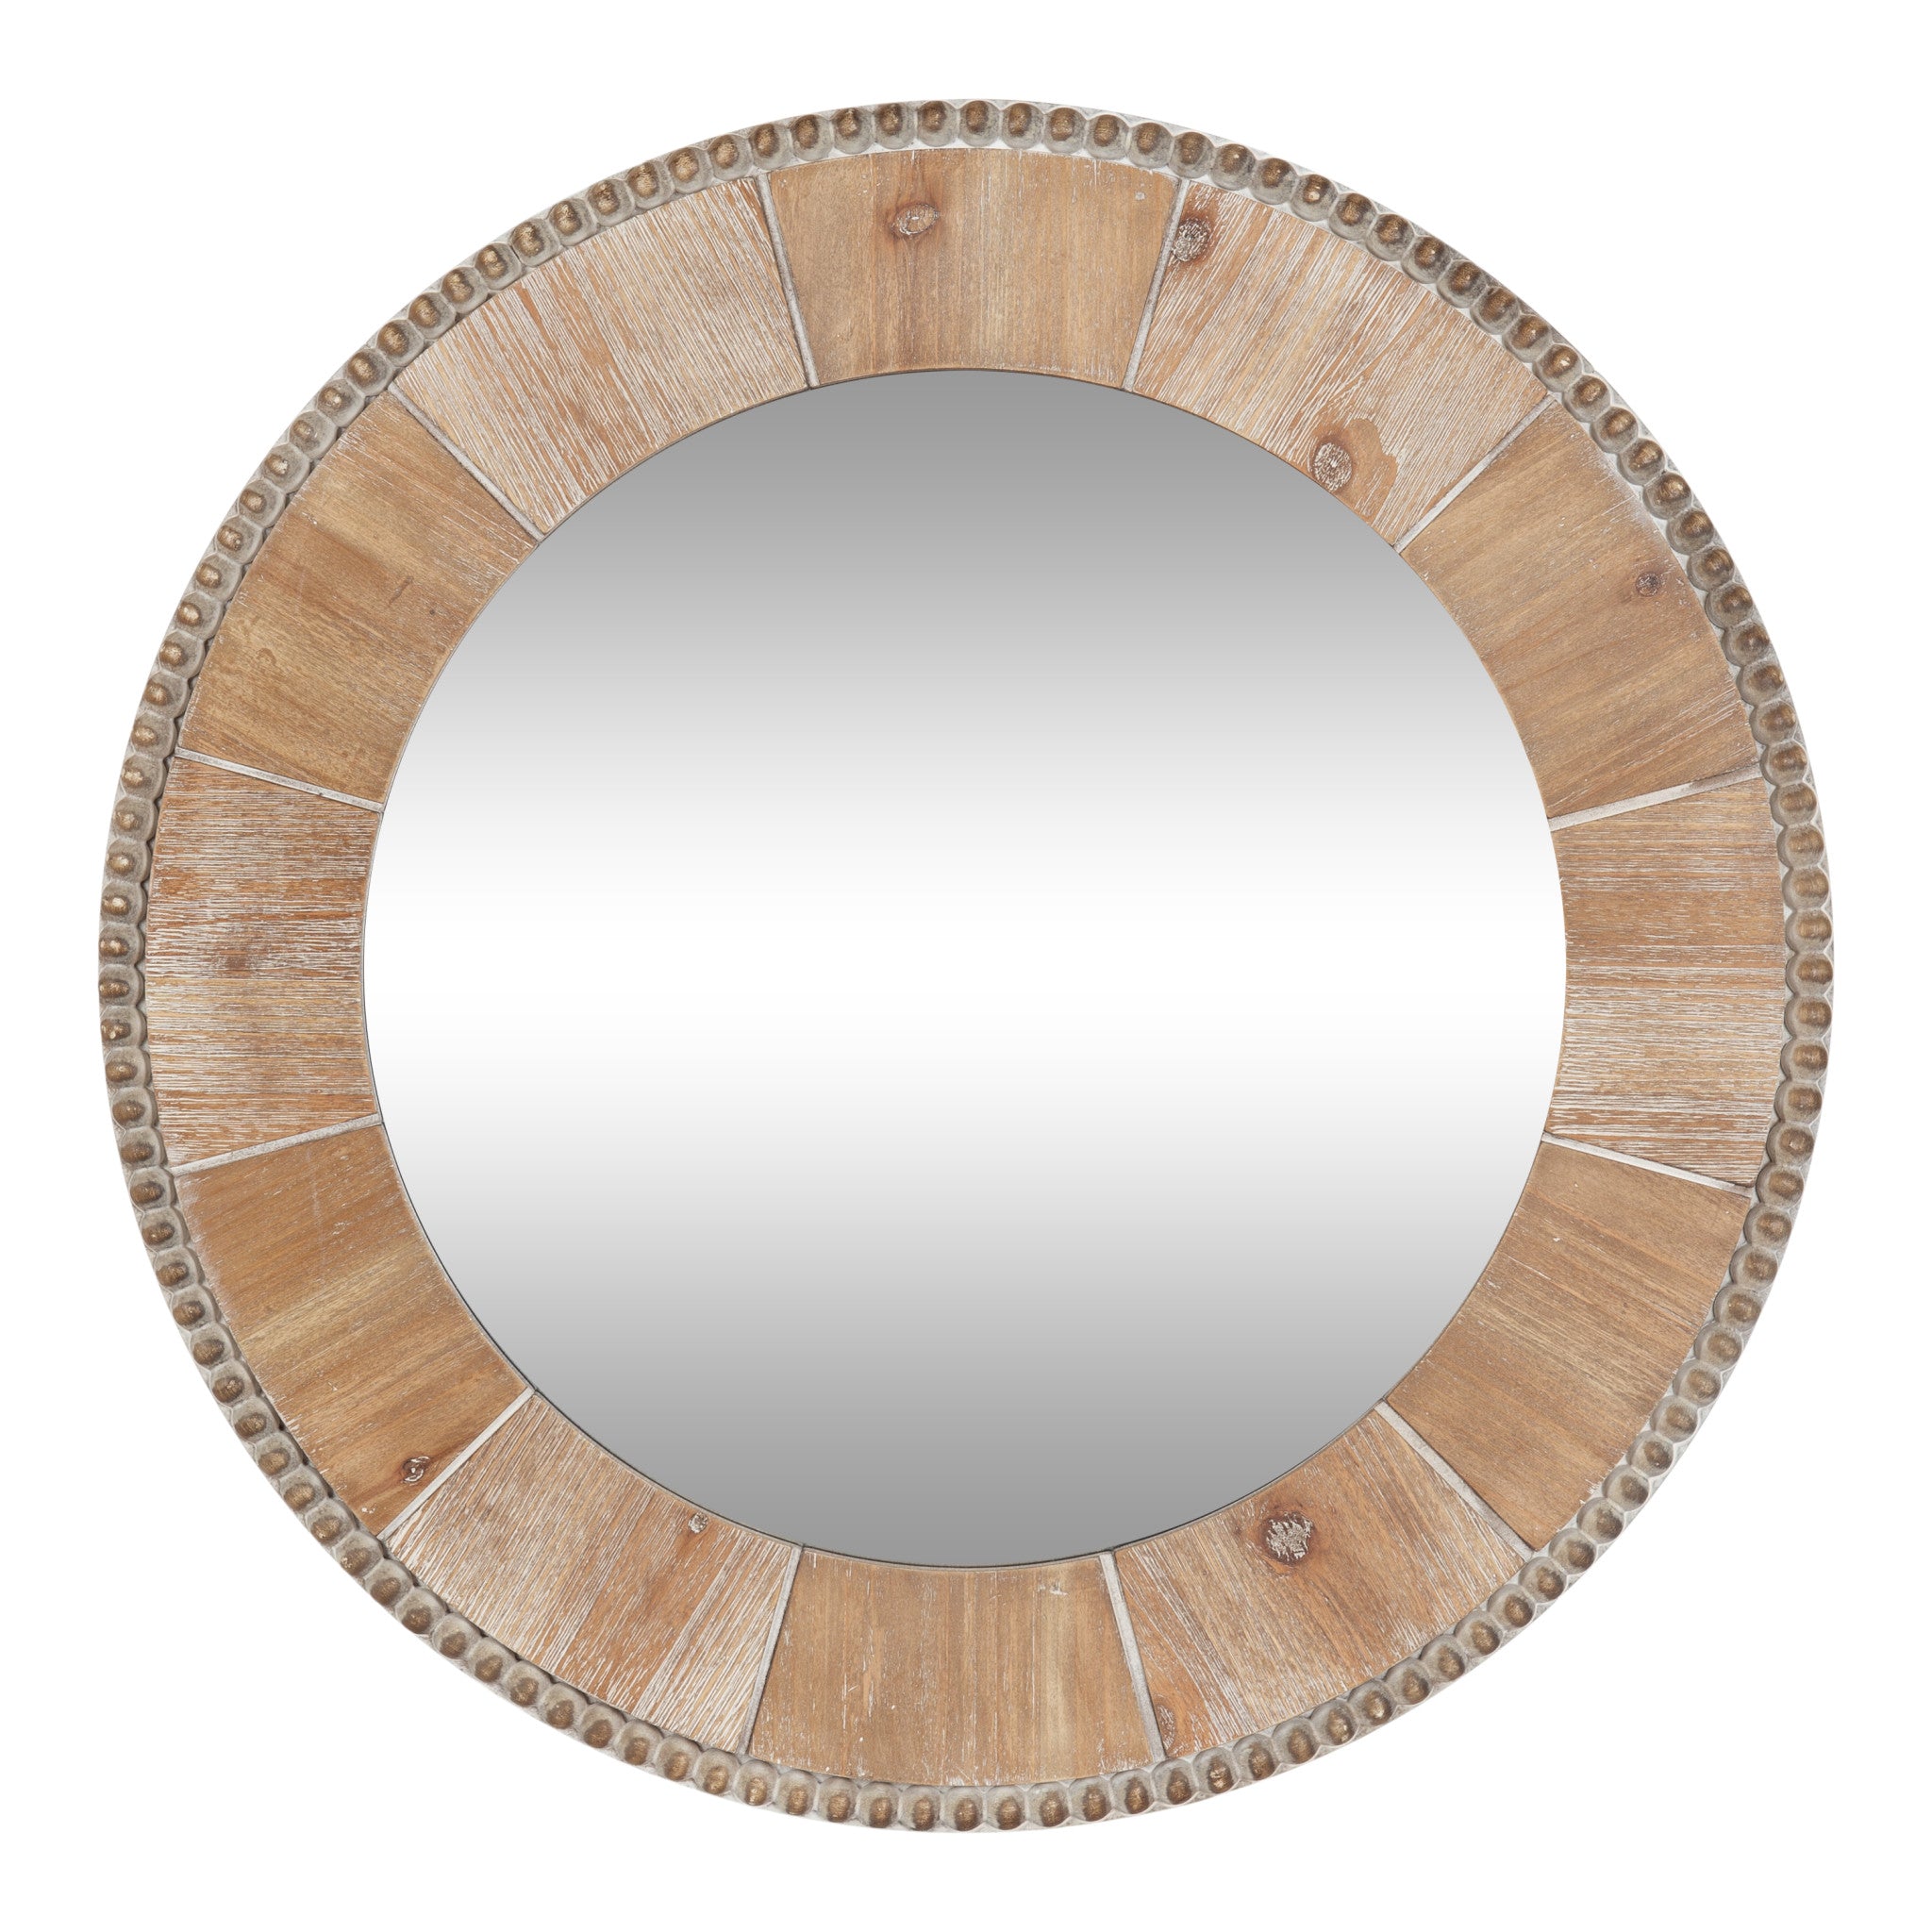 Calona Pieced Decorative Round Mirror